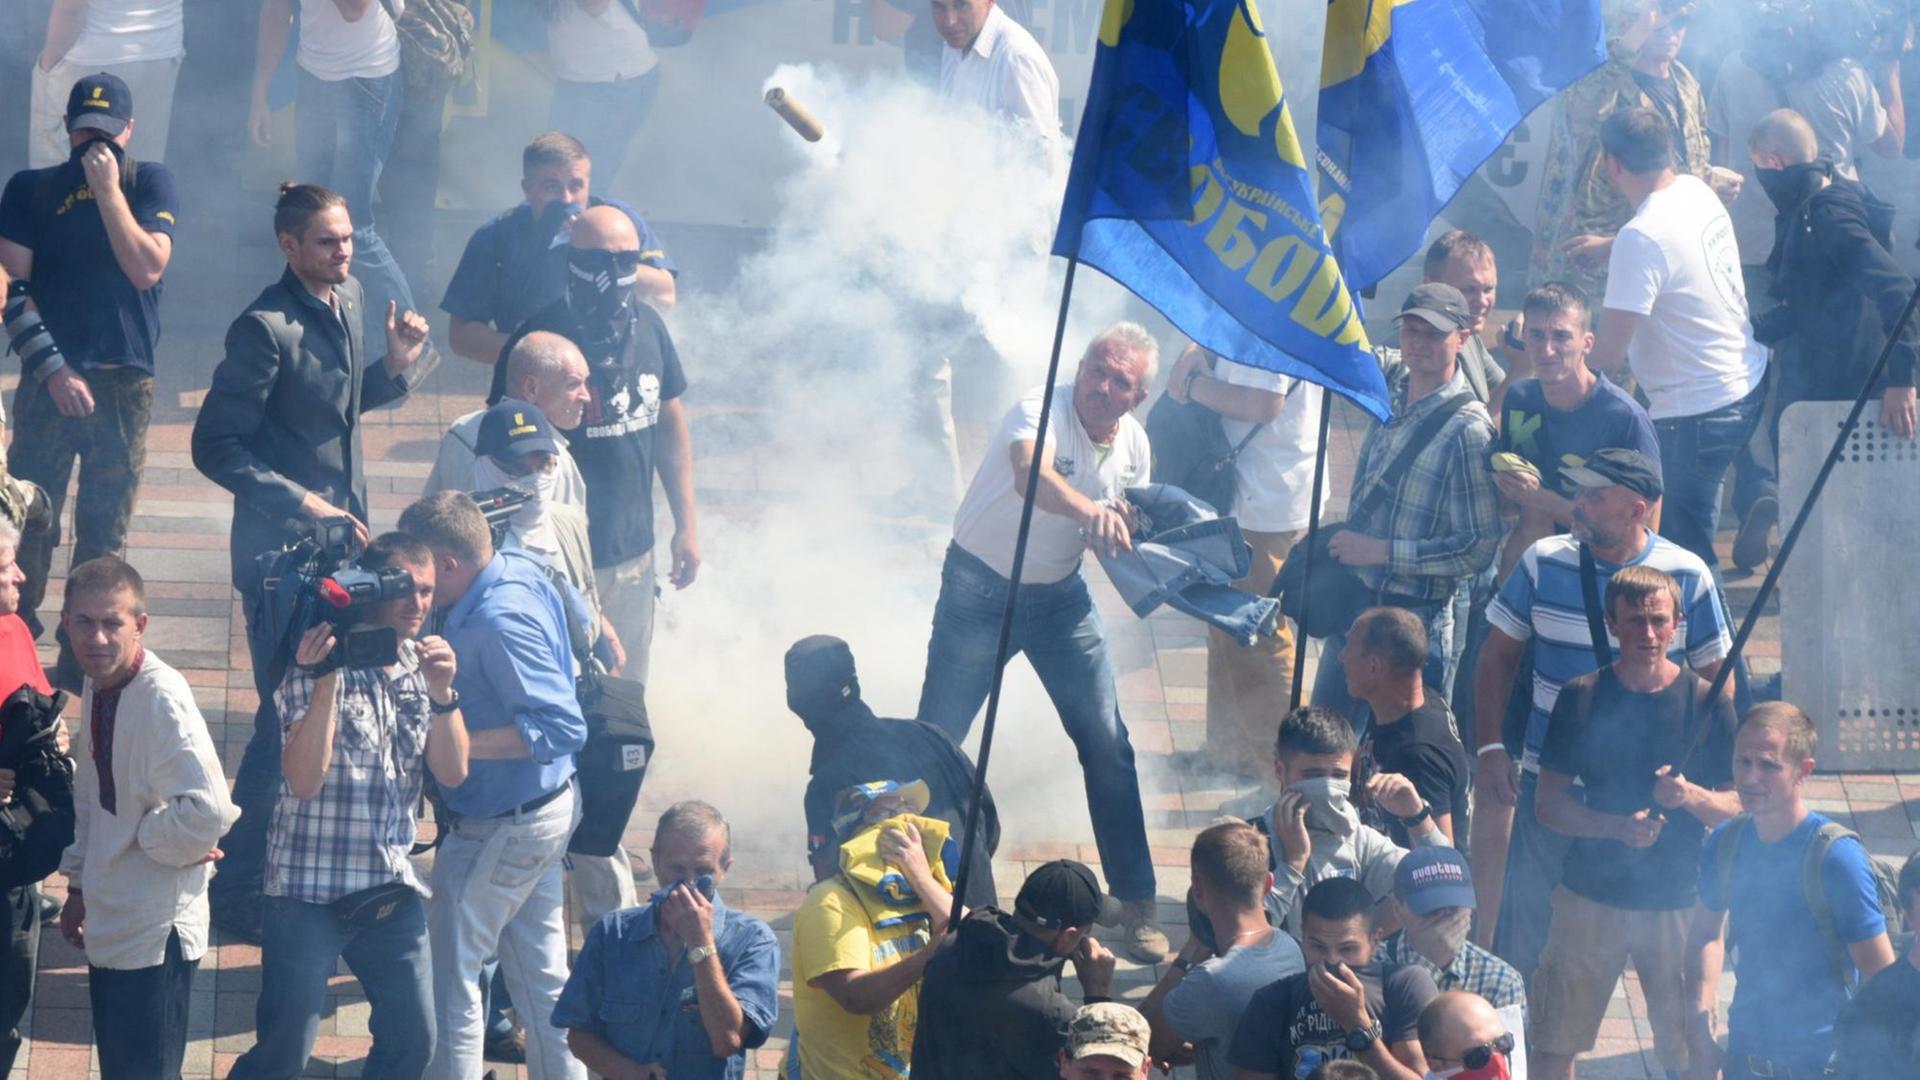 Proteste vor dem Parlament in Kiew, Demonstranten werfen Steine und Flaschen gegen Sicherheitskräfte.